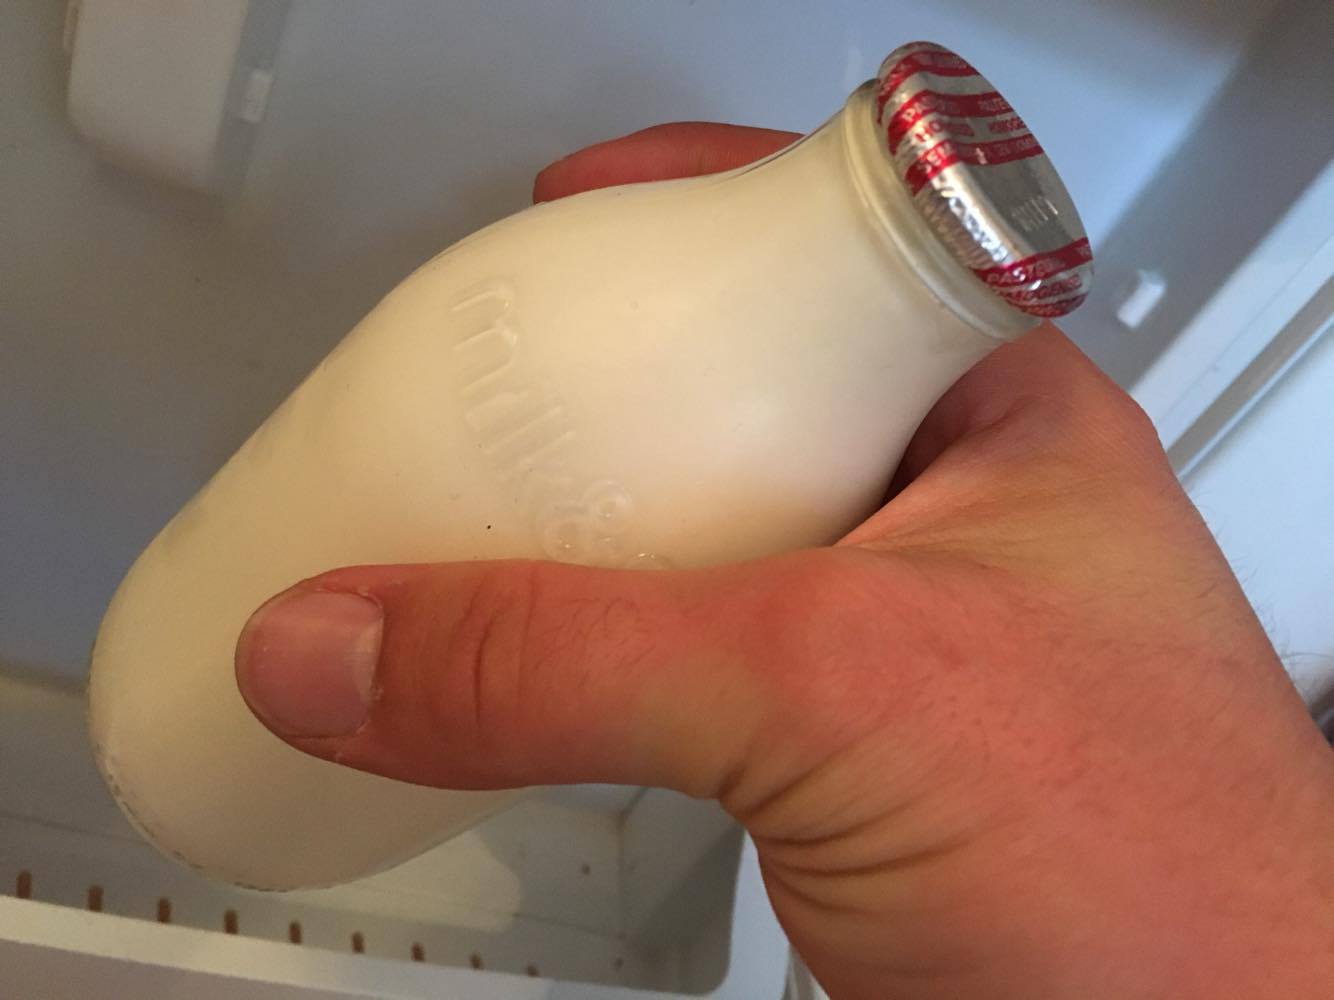 An errant hand thieves a pint of milk.